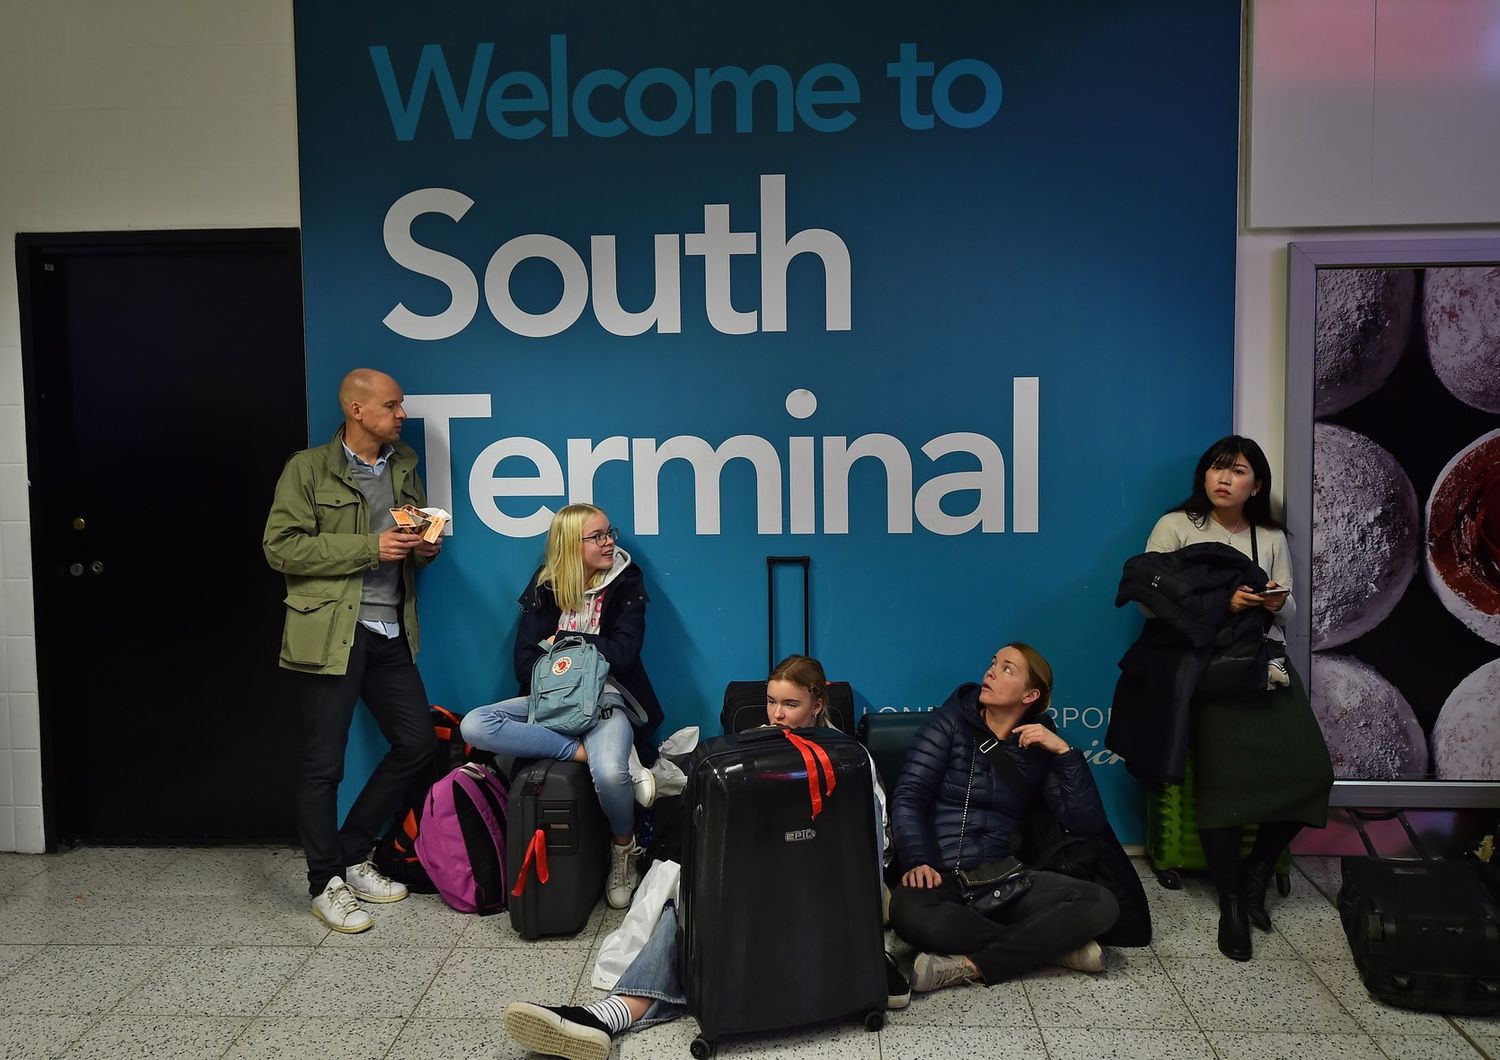 &nbsp;Passeggeri in attesa nell'aeroporto di Gatwick